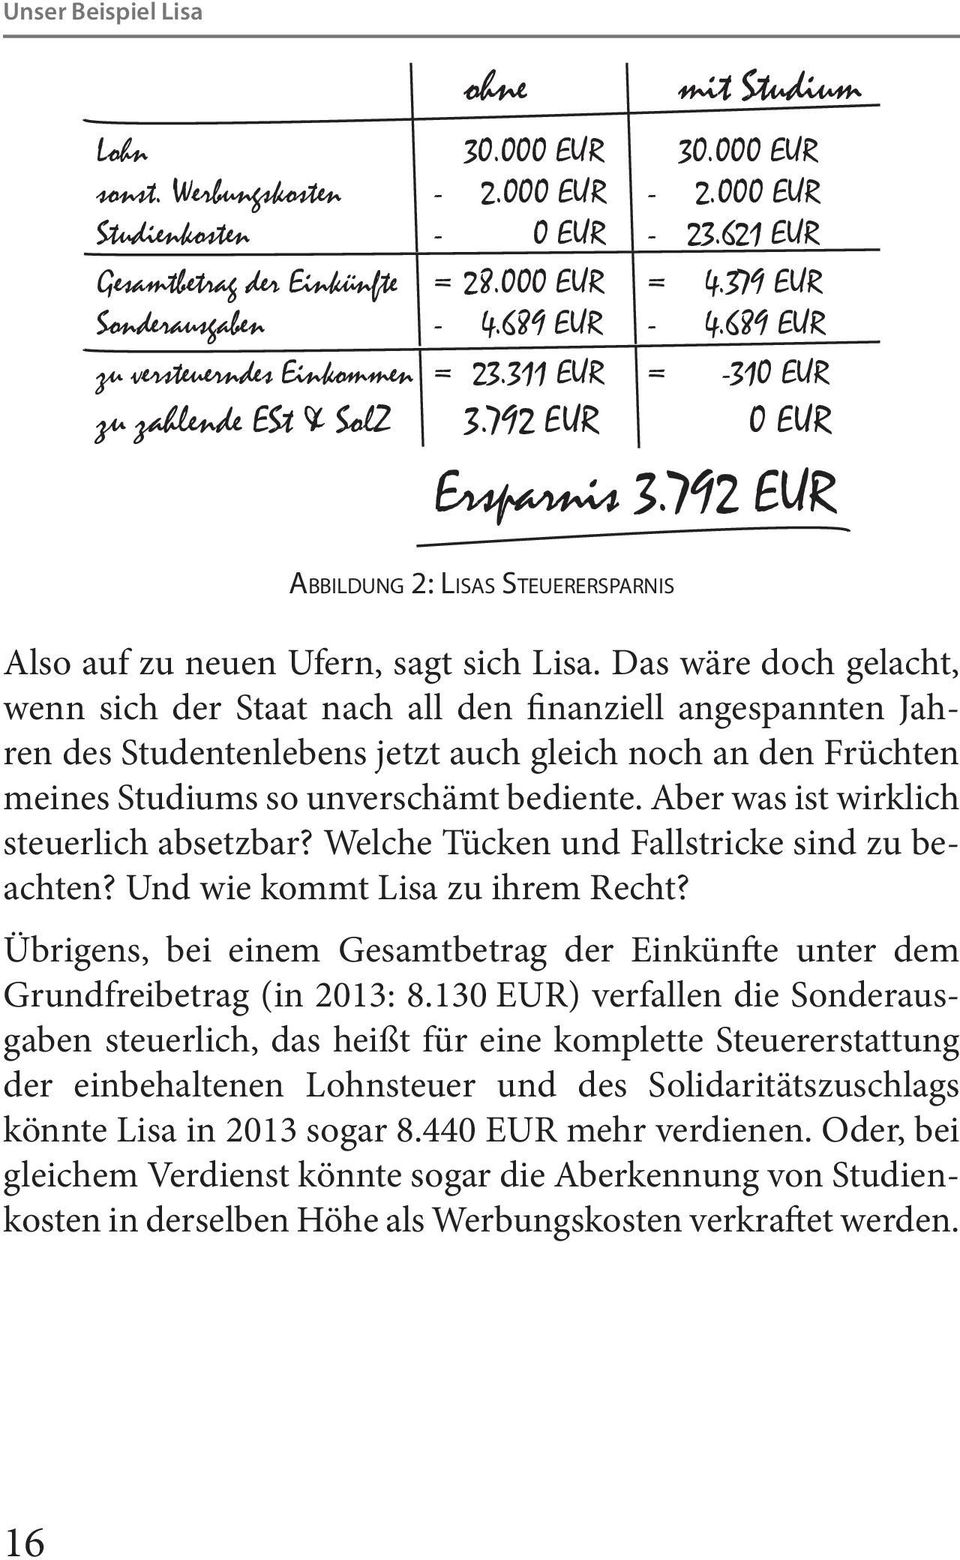 792 EUR Abbildung 2: Lisas Steuerersparnis Also auf zu neuen Ufern, sagt sich Lisa.